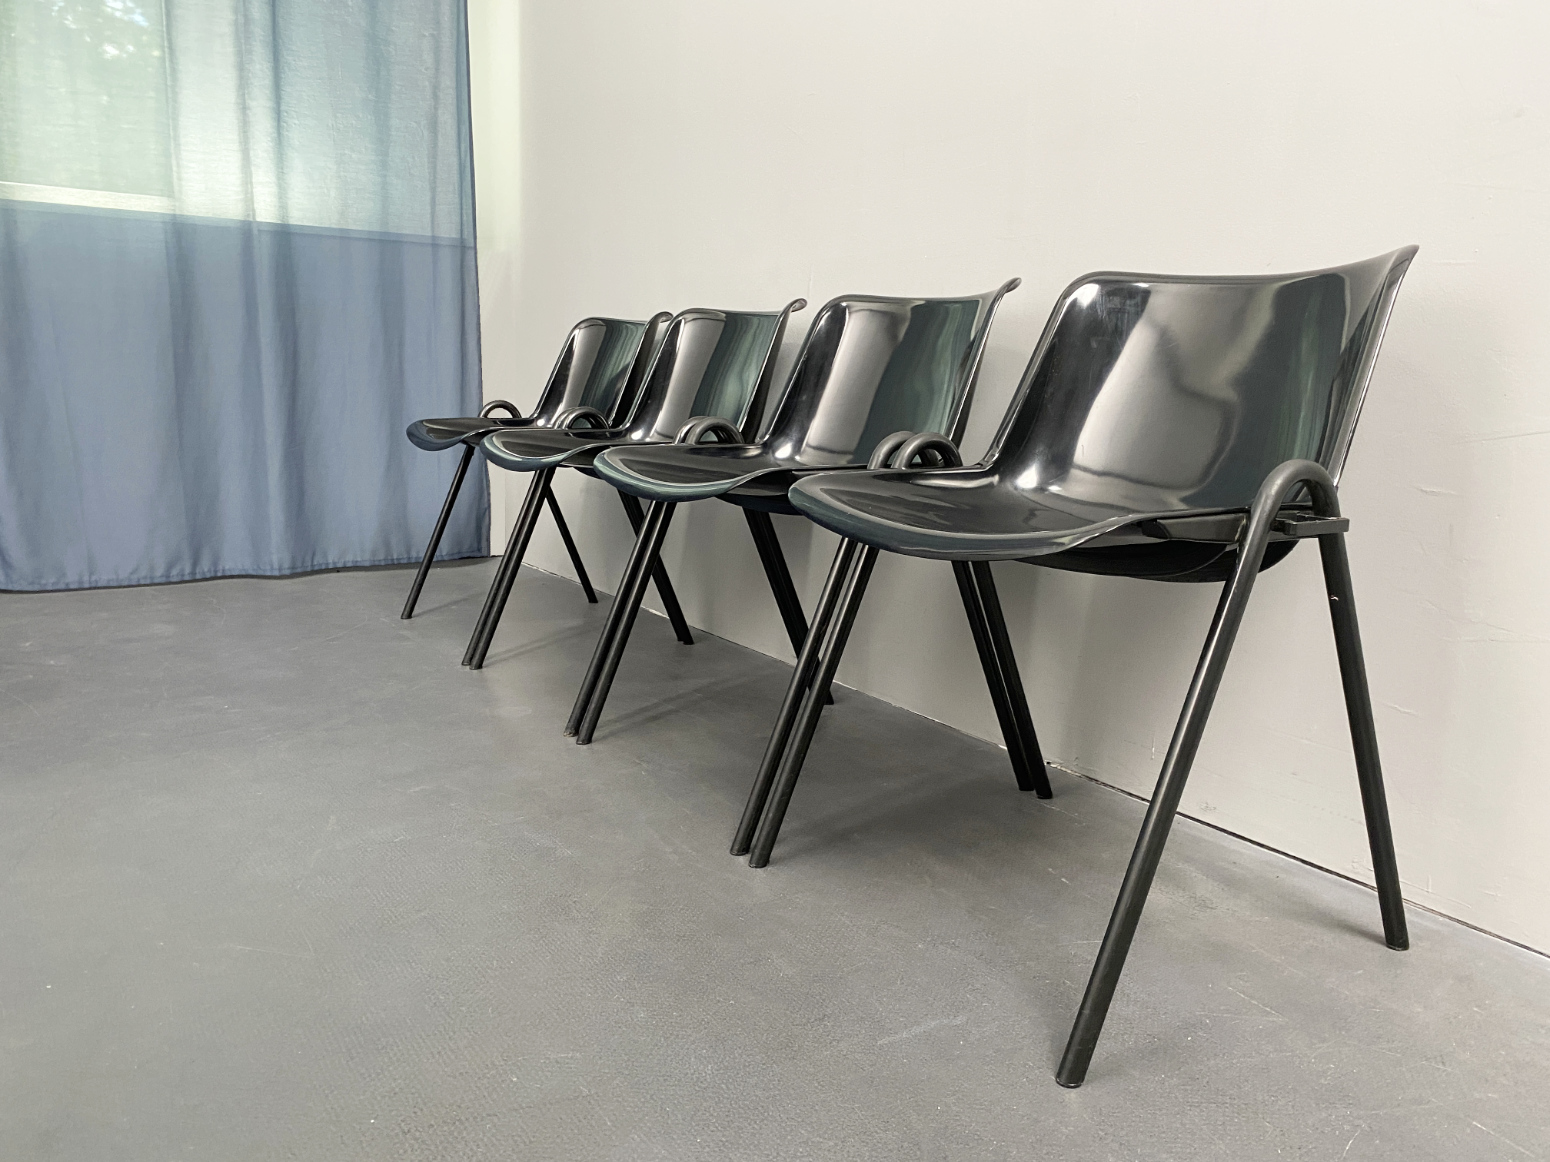 Set aus 4 Stühlen Modell Modus, von Osvaldo Borsani für Tecno, Italien, 1972. Stapelstuhl mit zusätzlicher Möglichkeit die Stühle in Reihe zu verbinden